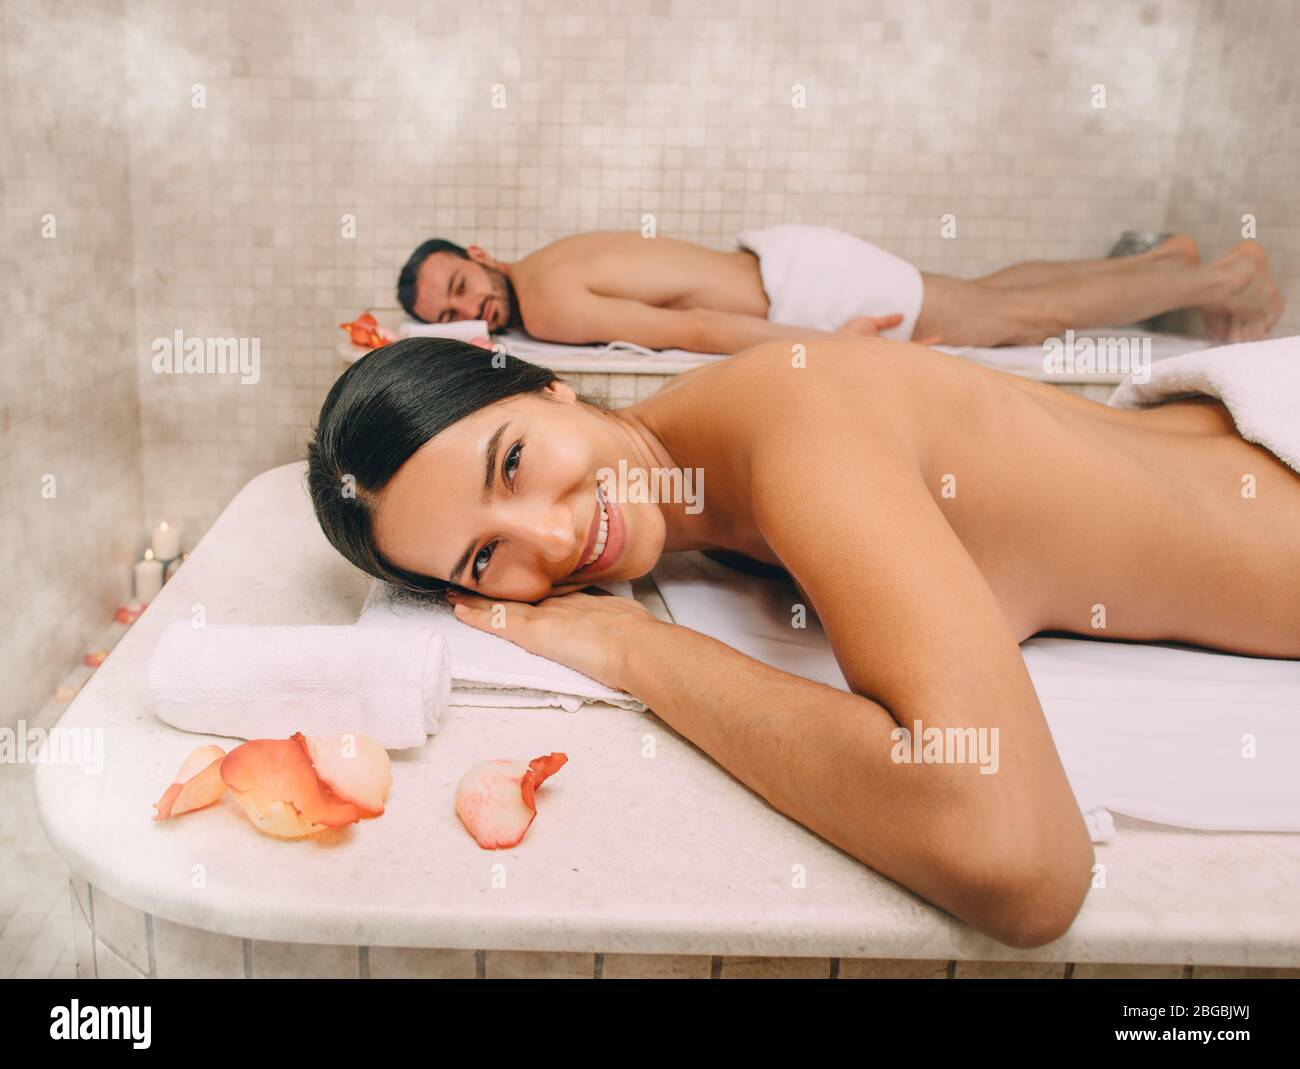 Belle femme et son petit ami jouissent d'un bain turc. La vapeur chaude réchauffait les corps d'un homme et d'une femme dans un hammam Banque D'Images